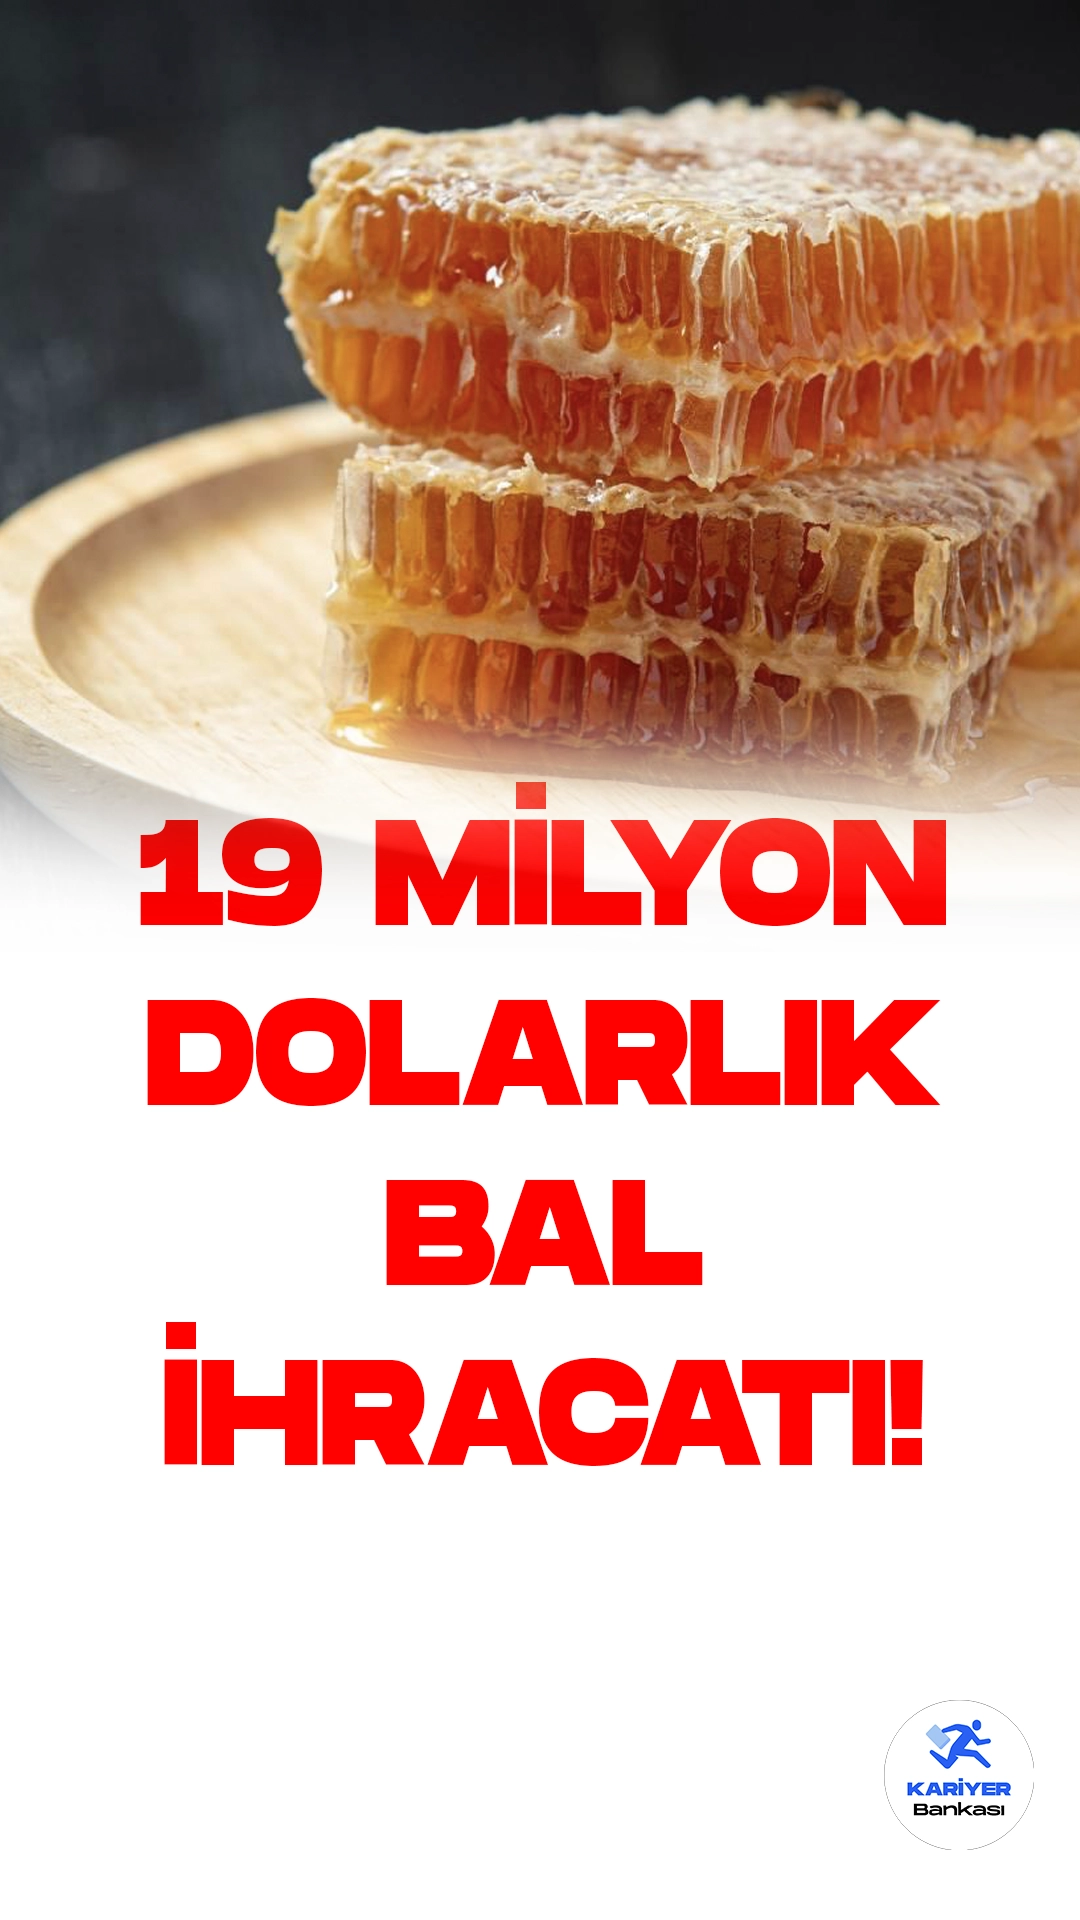 Türkiye, 7 Ayda 19 Milyon Dolarlık Bal İhracatı Gerçekleştirdi.Türkiye'nin ocak-temmuz dönemi bal ihracatı, 19 milyon 13 bin 292 dolarlık tutara ulaştı. Bu dönemde en fazla dış satım gerçekleştiren ülkeler sırasıyla ABD, Almanya ve İsrail oldu.